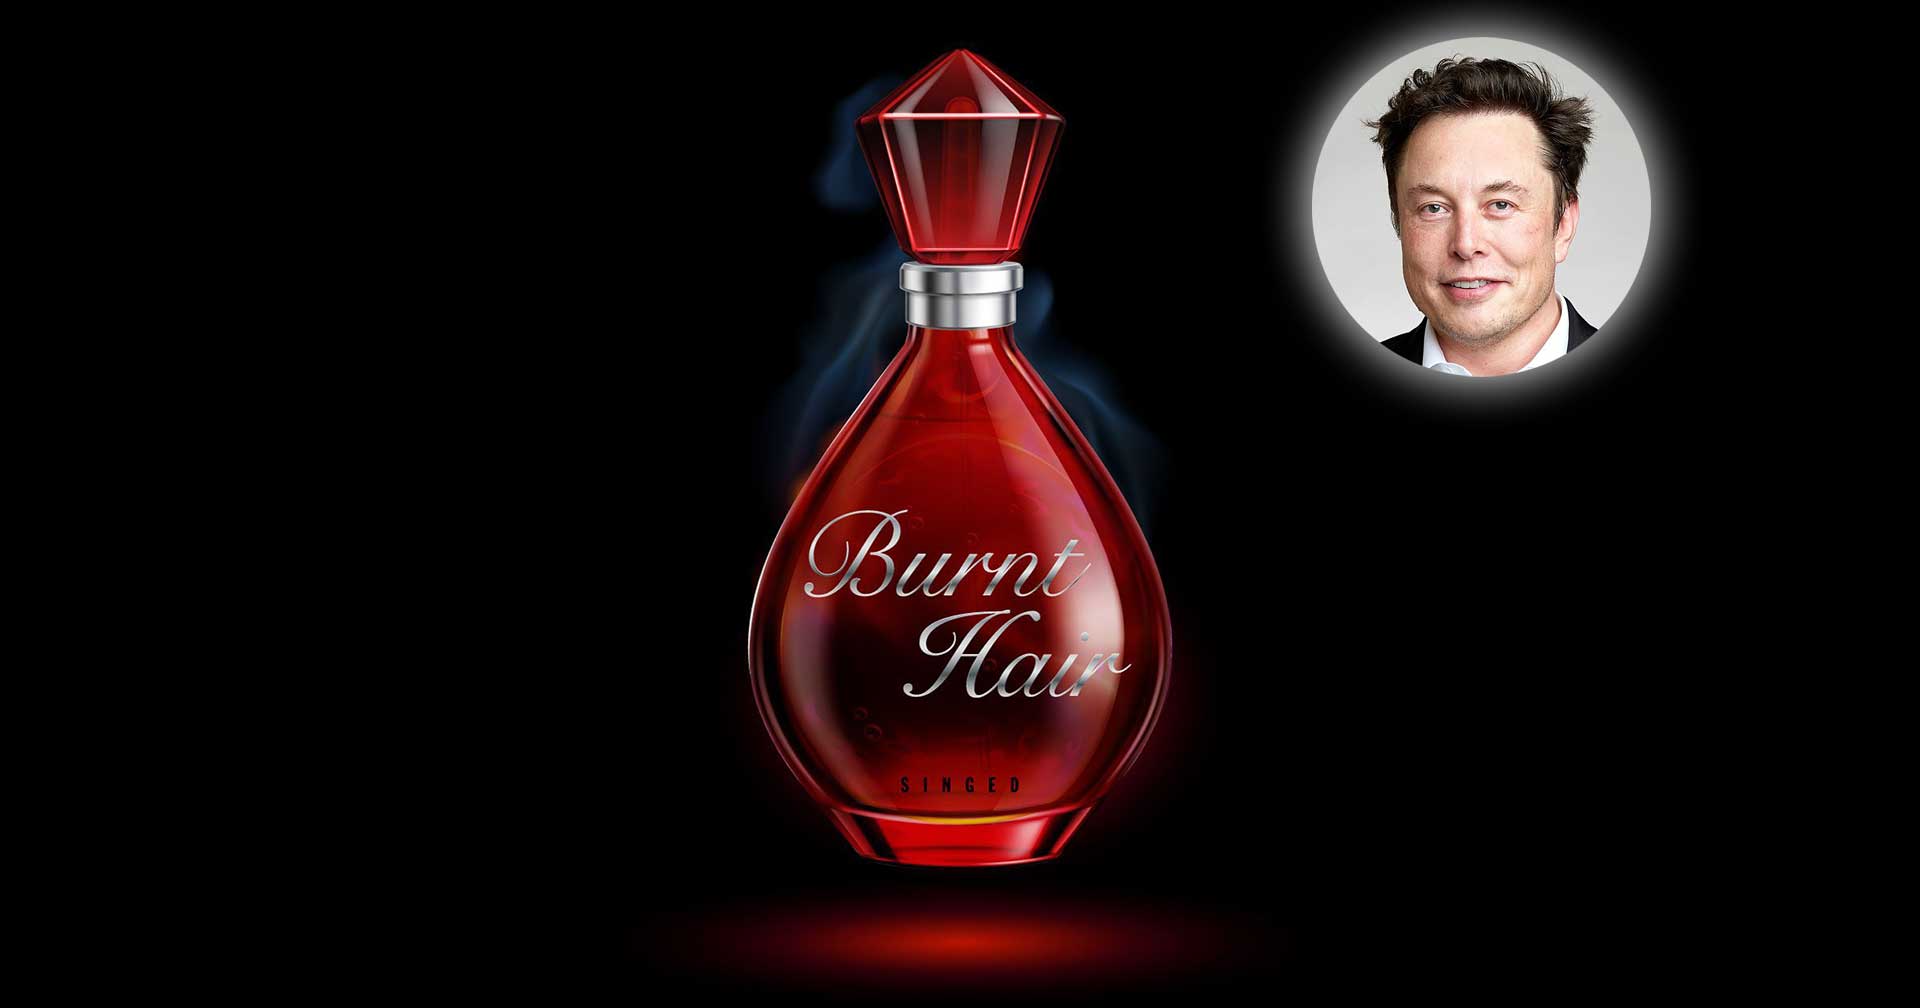 Elon Musk เปิดตัวน้ำหอม ‘Burnt Hair’ พร้อมวางจำหน่ายช่วงไตรมาสแรกของปี 2023